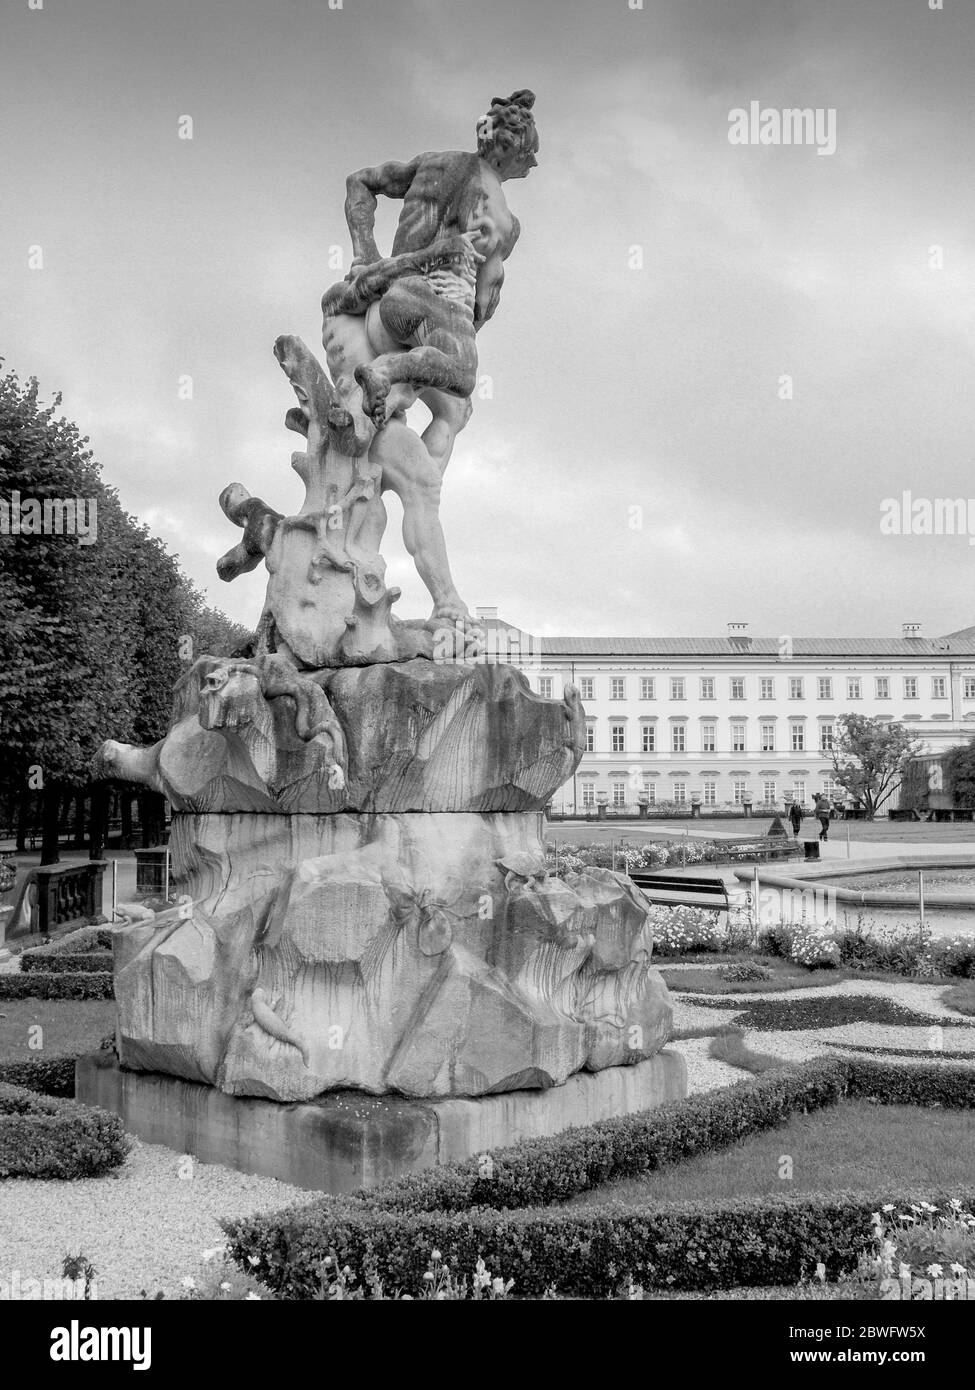 Una statua al Castello Mirabell - i giardini del Palazzo Mirabell a Salisburgo, Austria. Fu costruita nel 1606 dal principe arcivescovo Wolf Dietrich per il suo belov Foto Stock